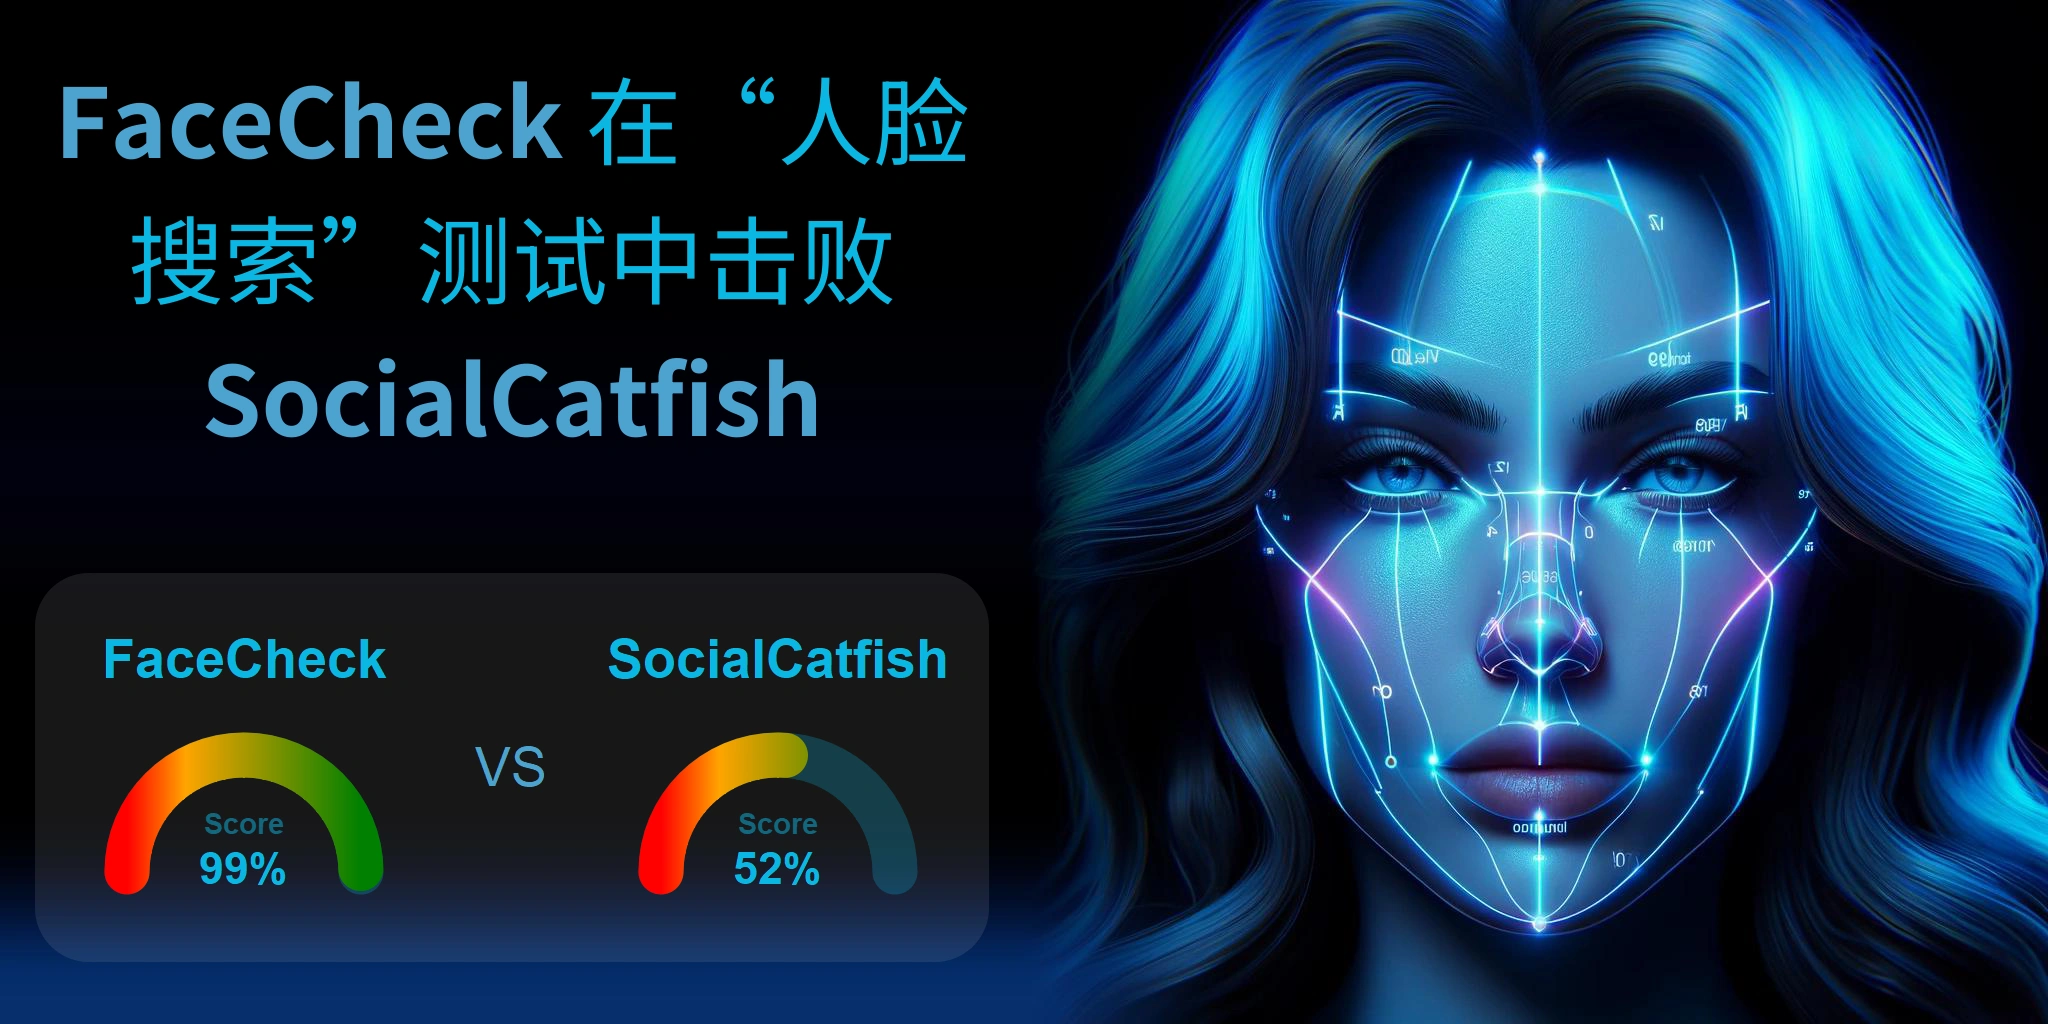 哪一个更适合人脸搜索：<br>FaceCheck 还是 SocialCatfish？